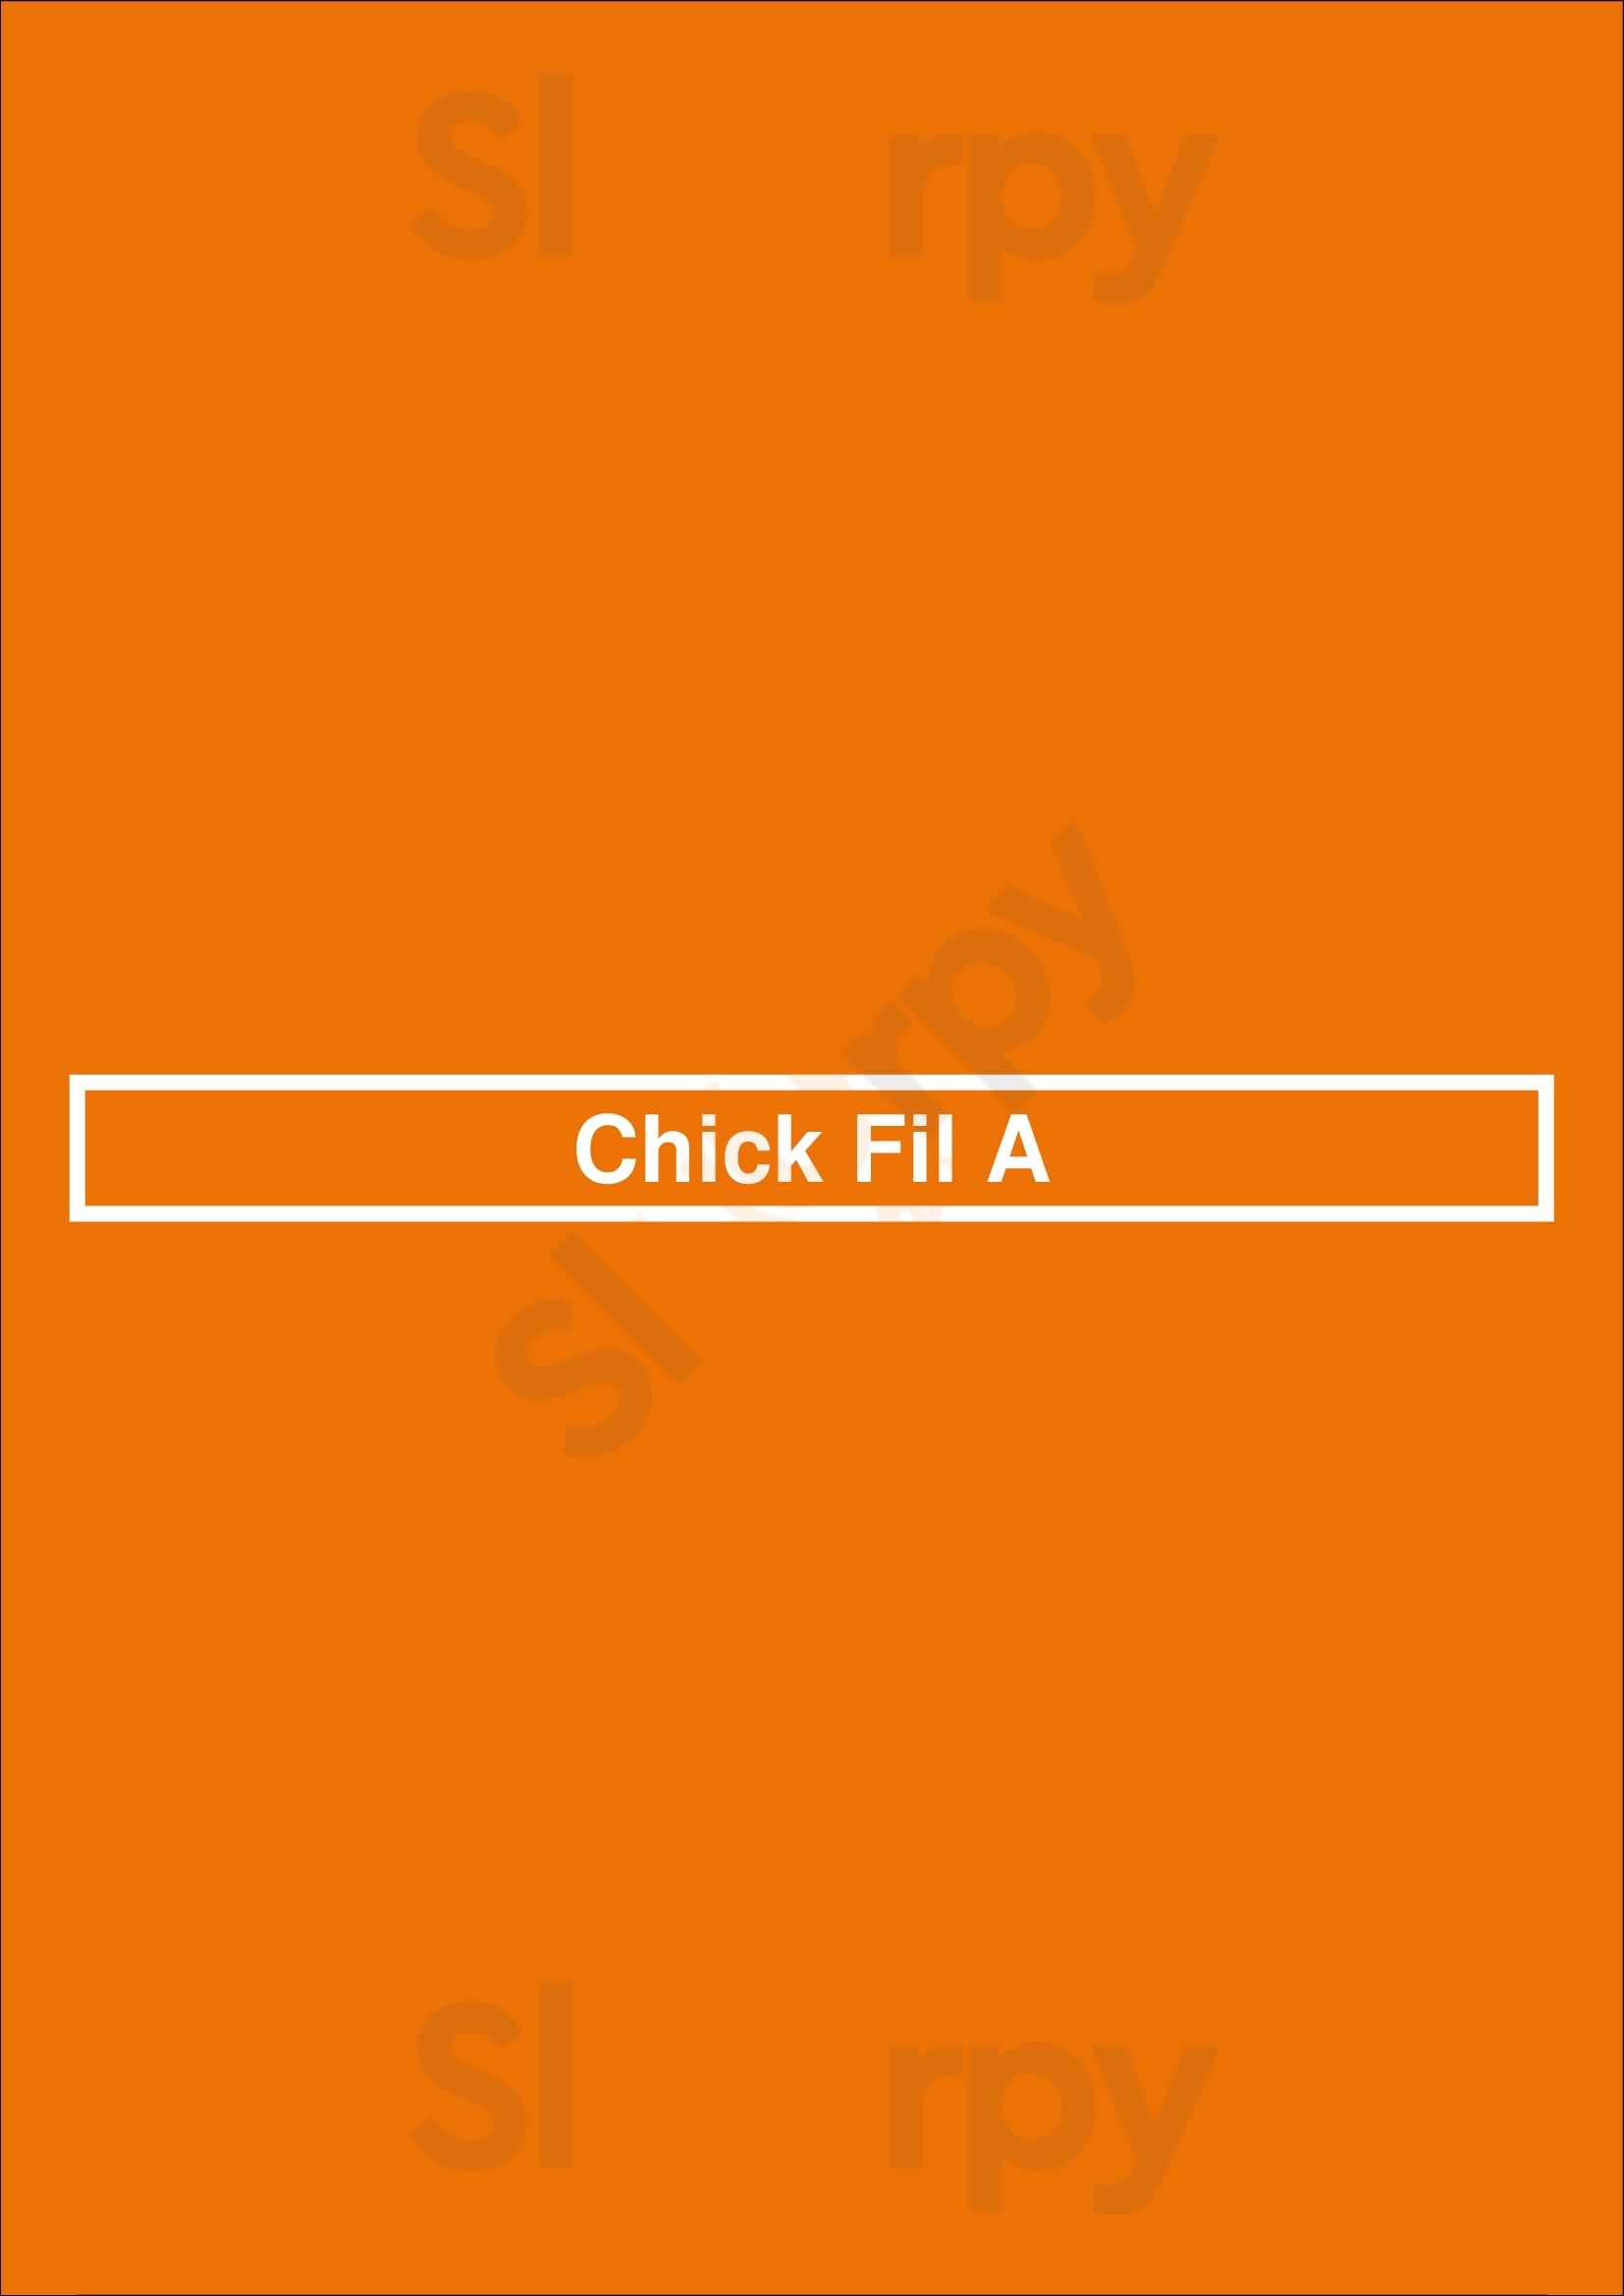 Chick-fil-a Reno Menu - 1